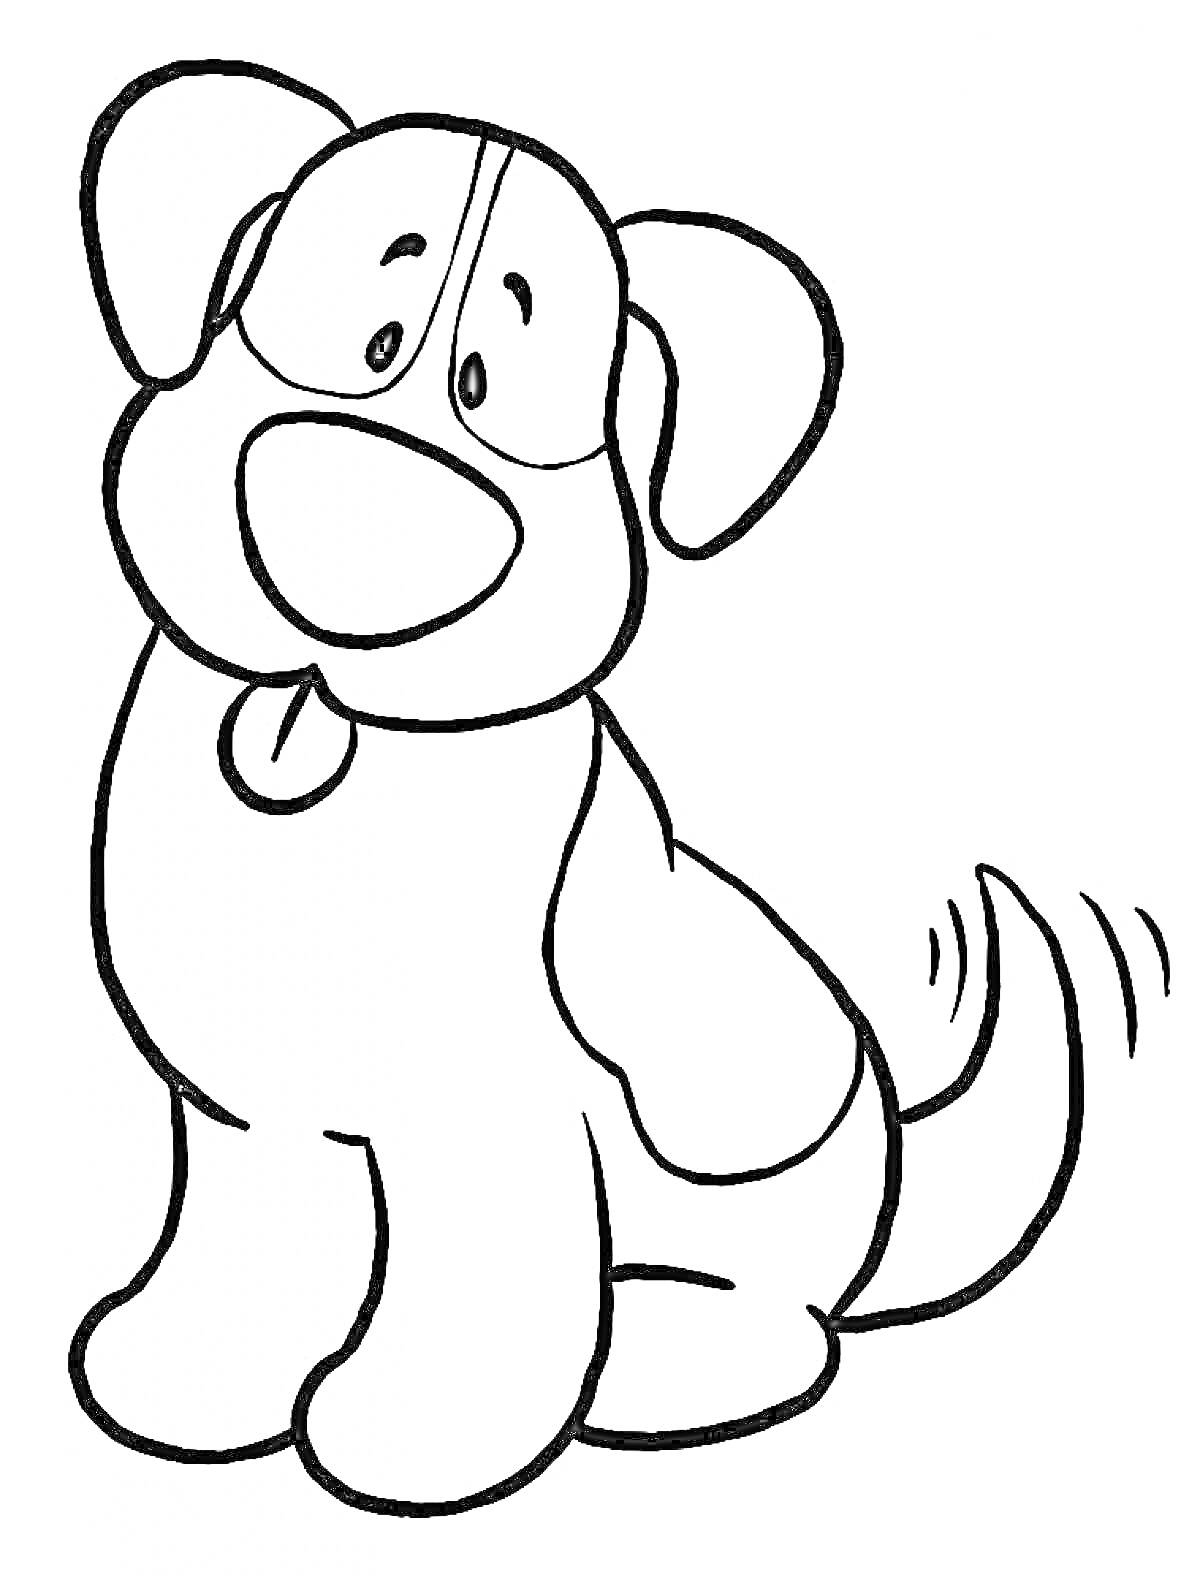 Раскраска Собака с высунутым языком и немного приподнятыми ушами, с сидячей позицией, хвост виляет